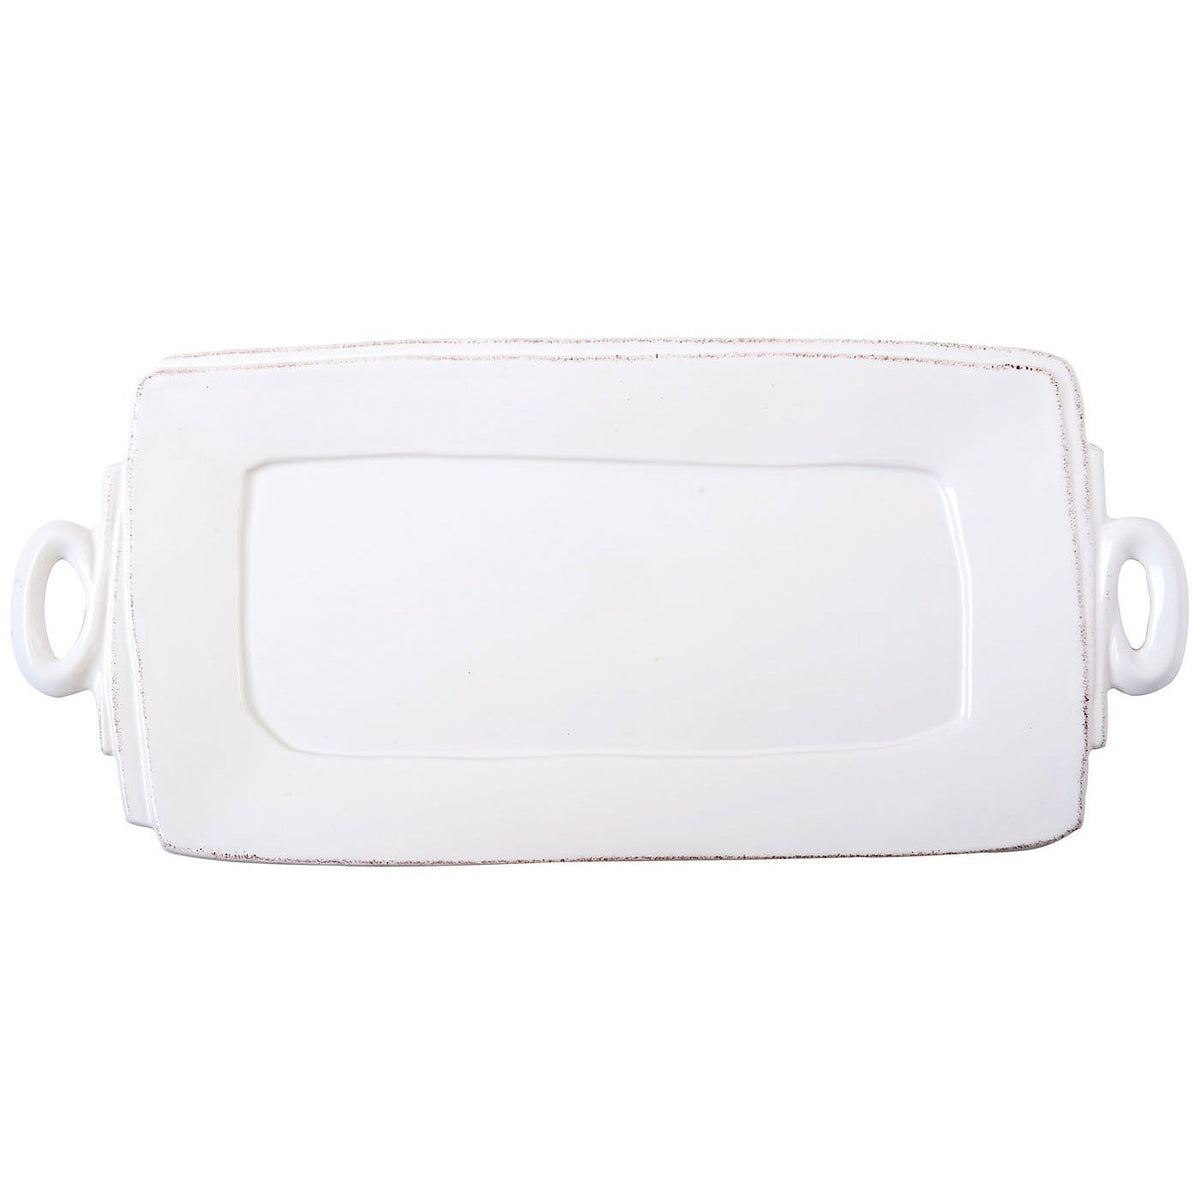 VIETRI: Lastra White Handled Rectangular Platter - Artistica.com